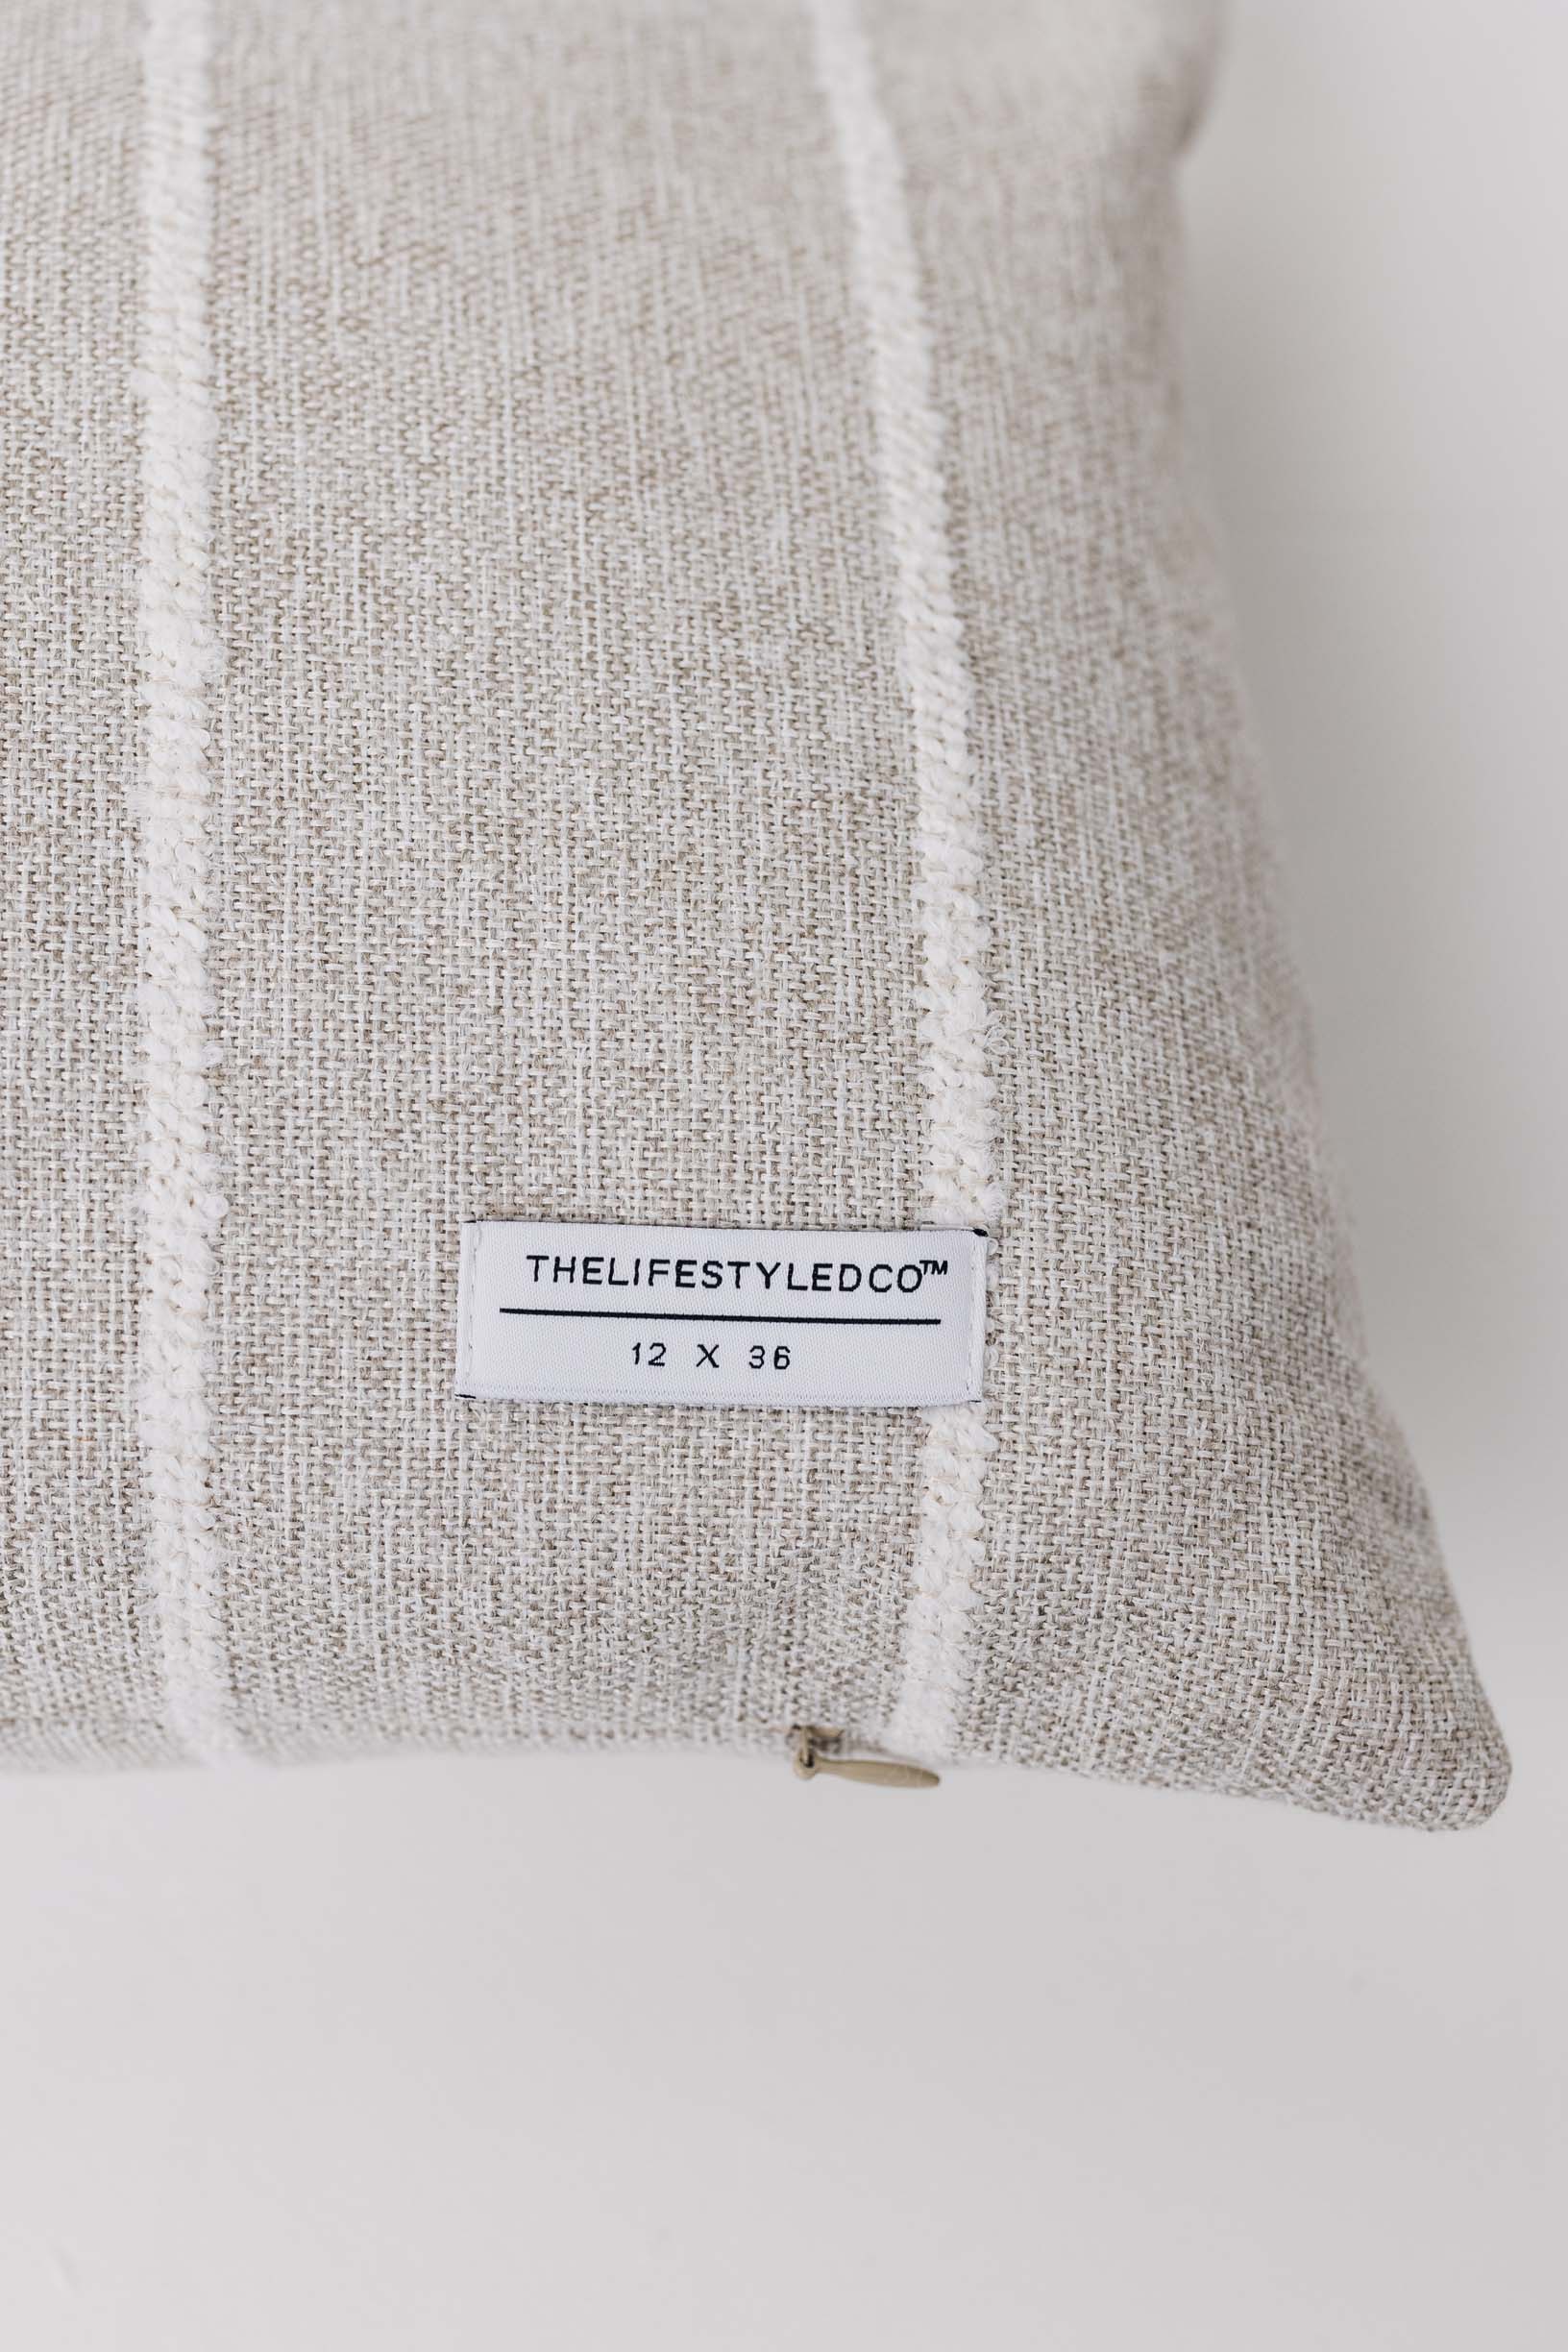 Jolie Textured Slub Stripe Pillow - 3 Sizes